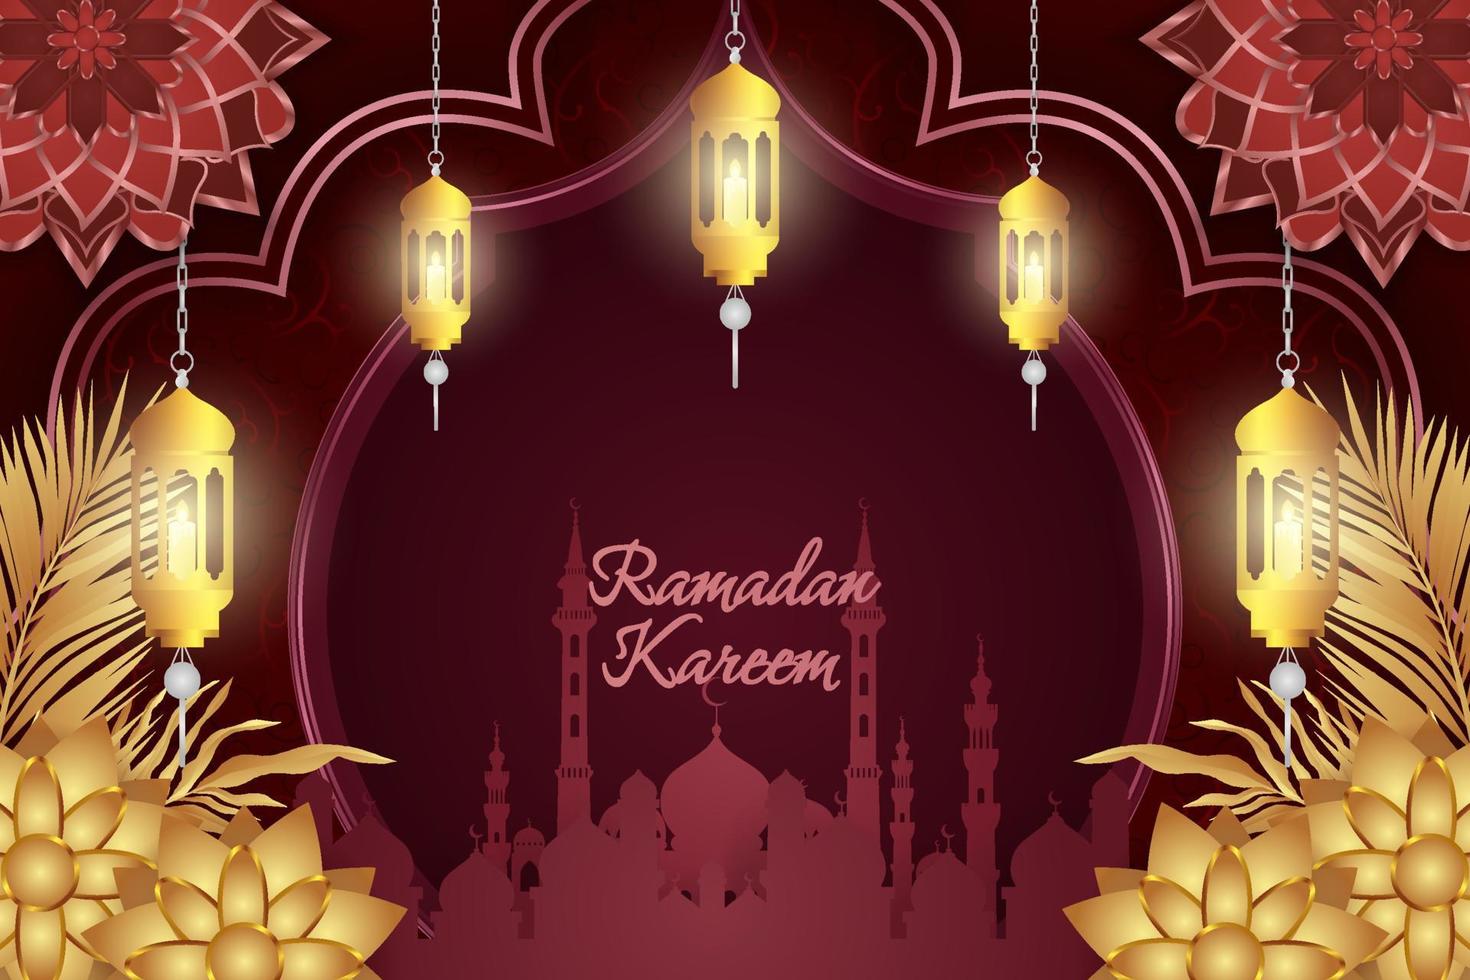 ramadan kareem estilo islámico lujo rojo y dorado con mezquita y hermoso adorno vector